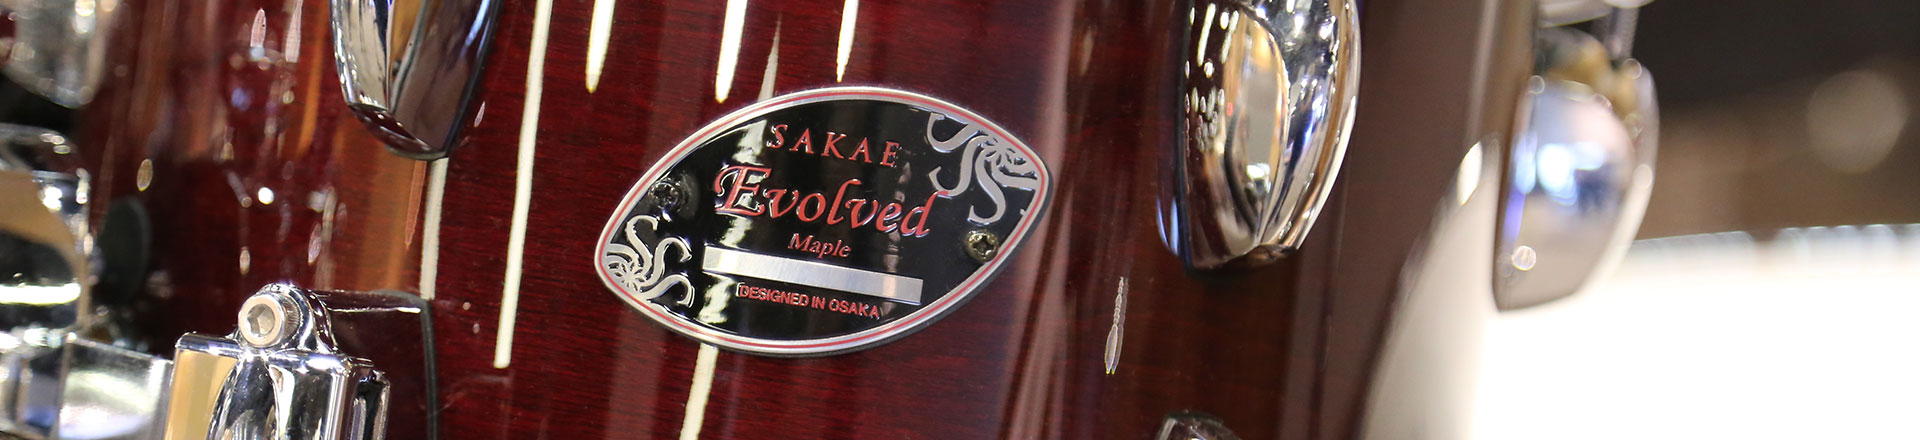 NAMM'20: Marka Sakae wraca jako Sakae Osaka Heritage